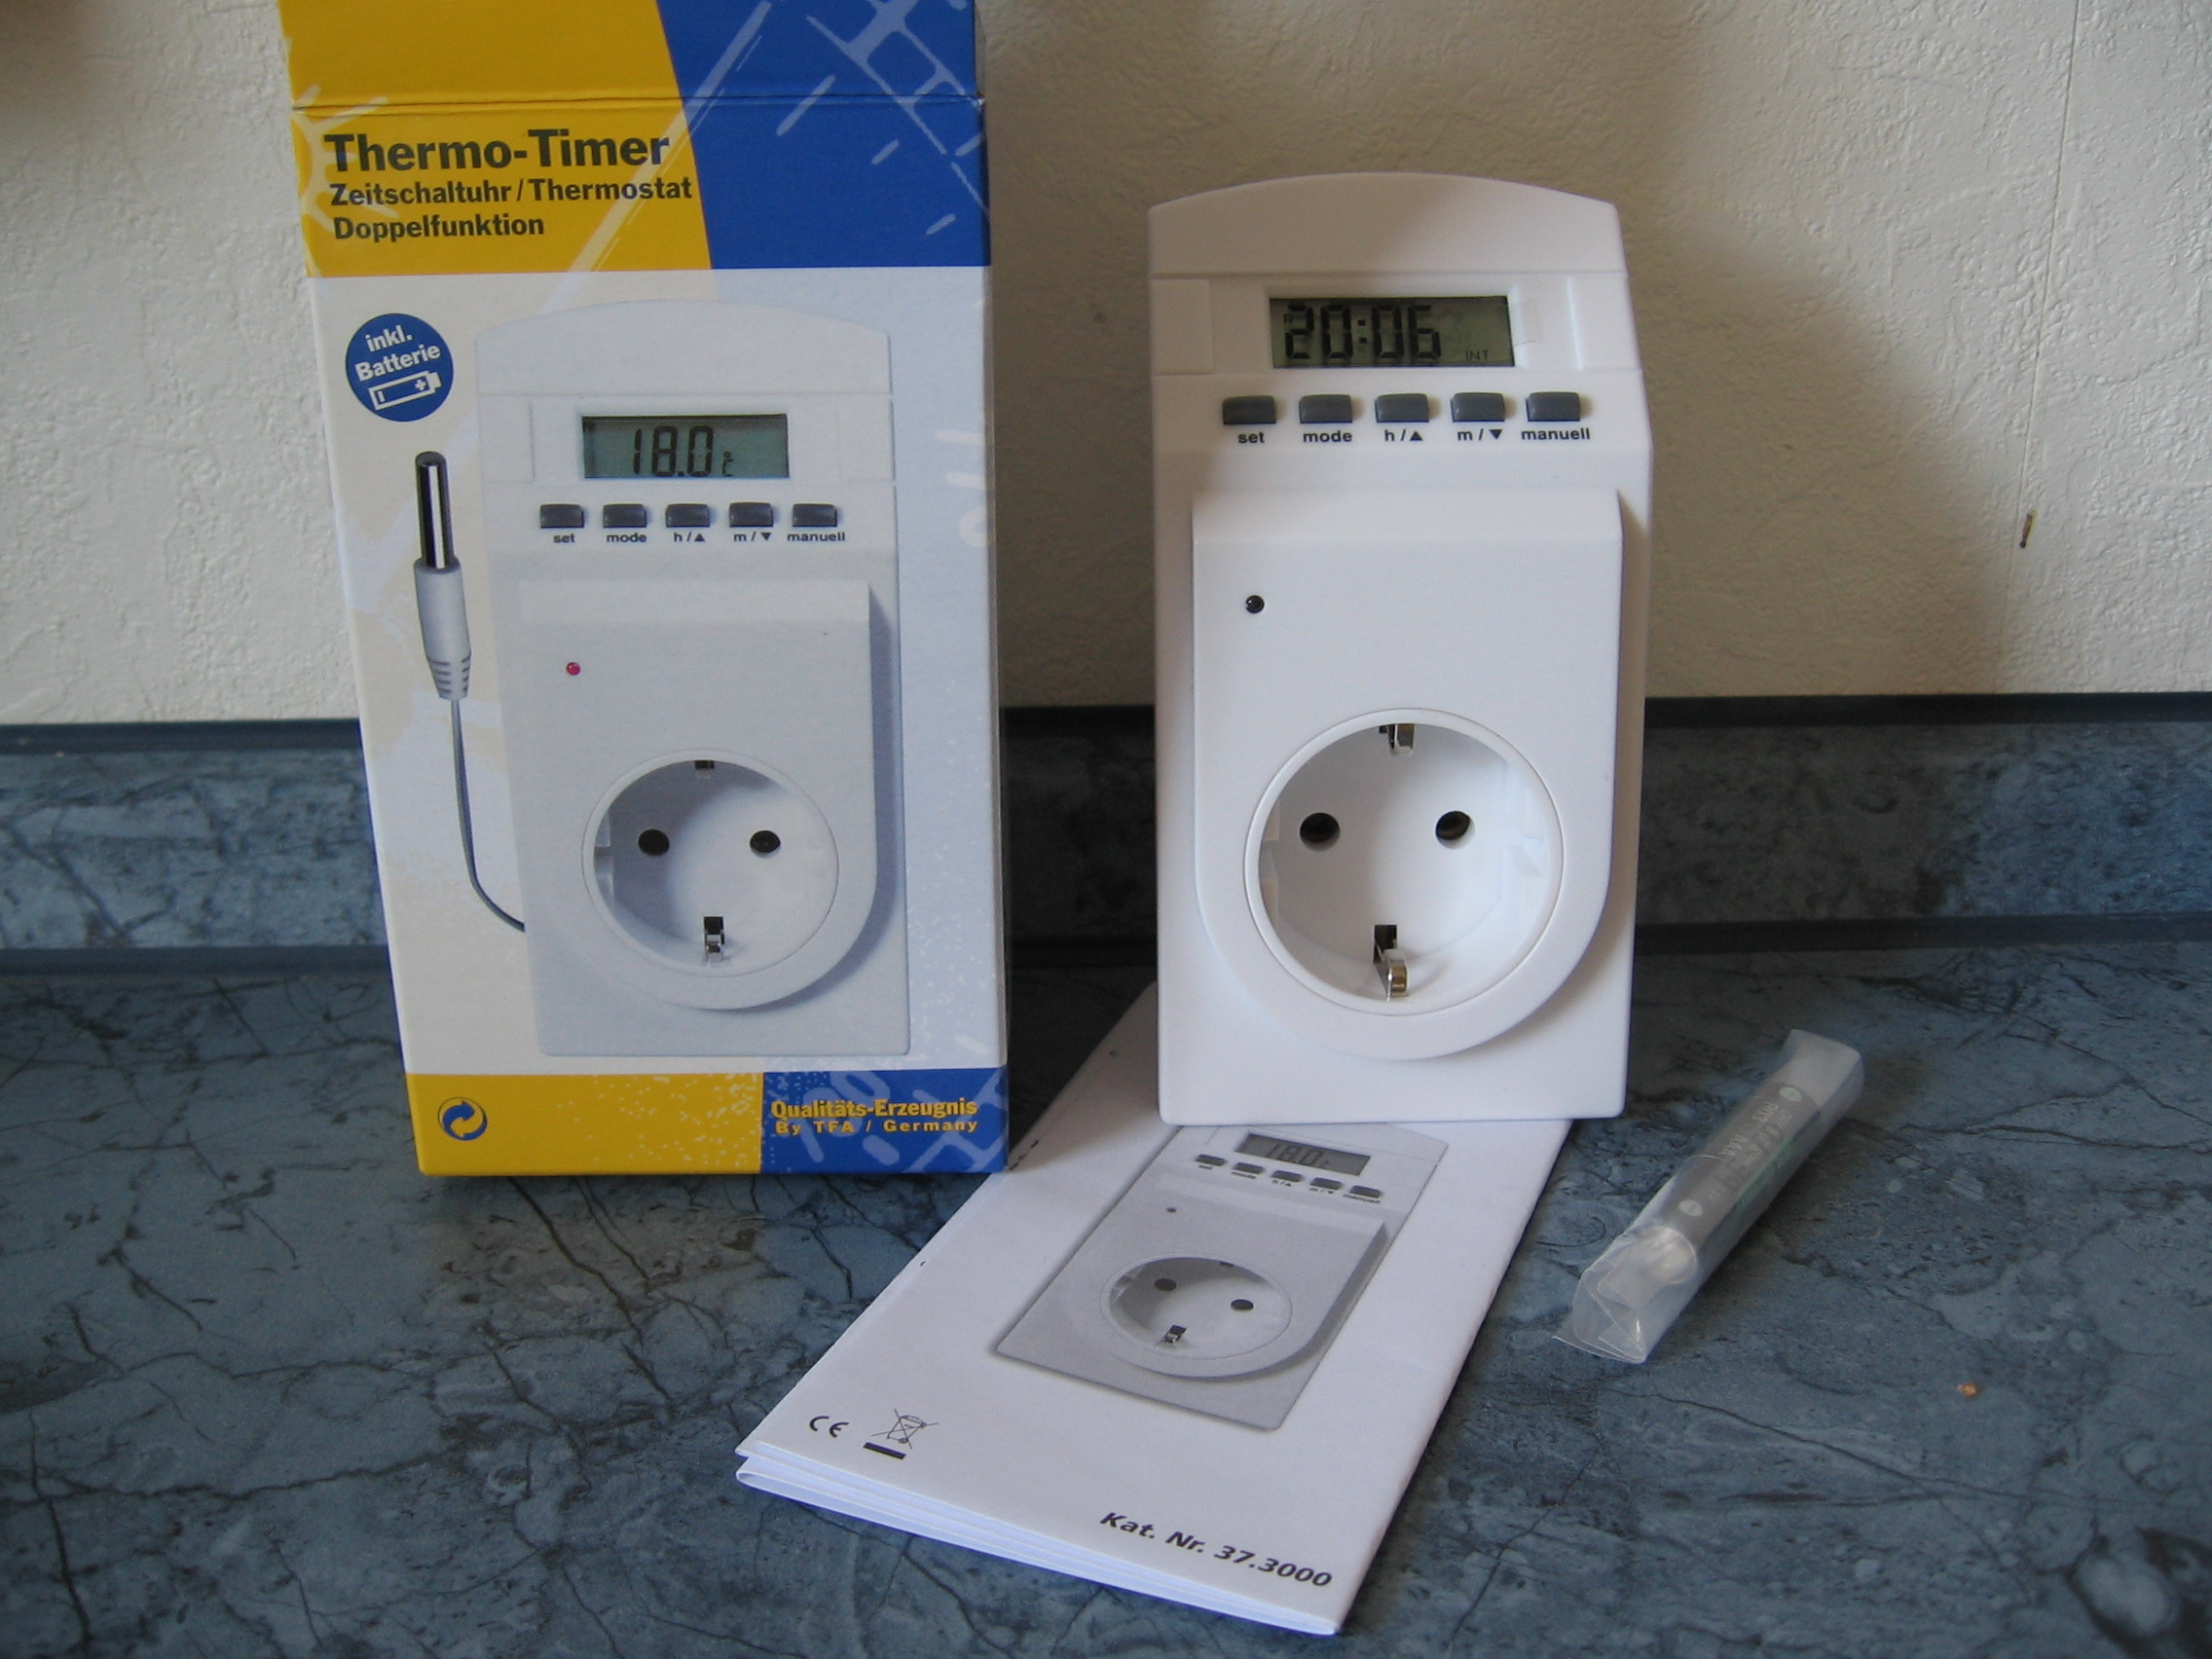 NEU und originalverpackt! Zeitschaltuhr und Thermostat in einem Thermo-Timer 